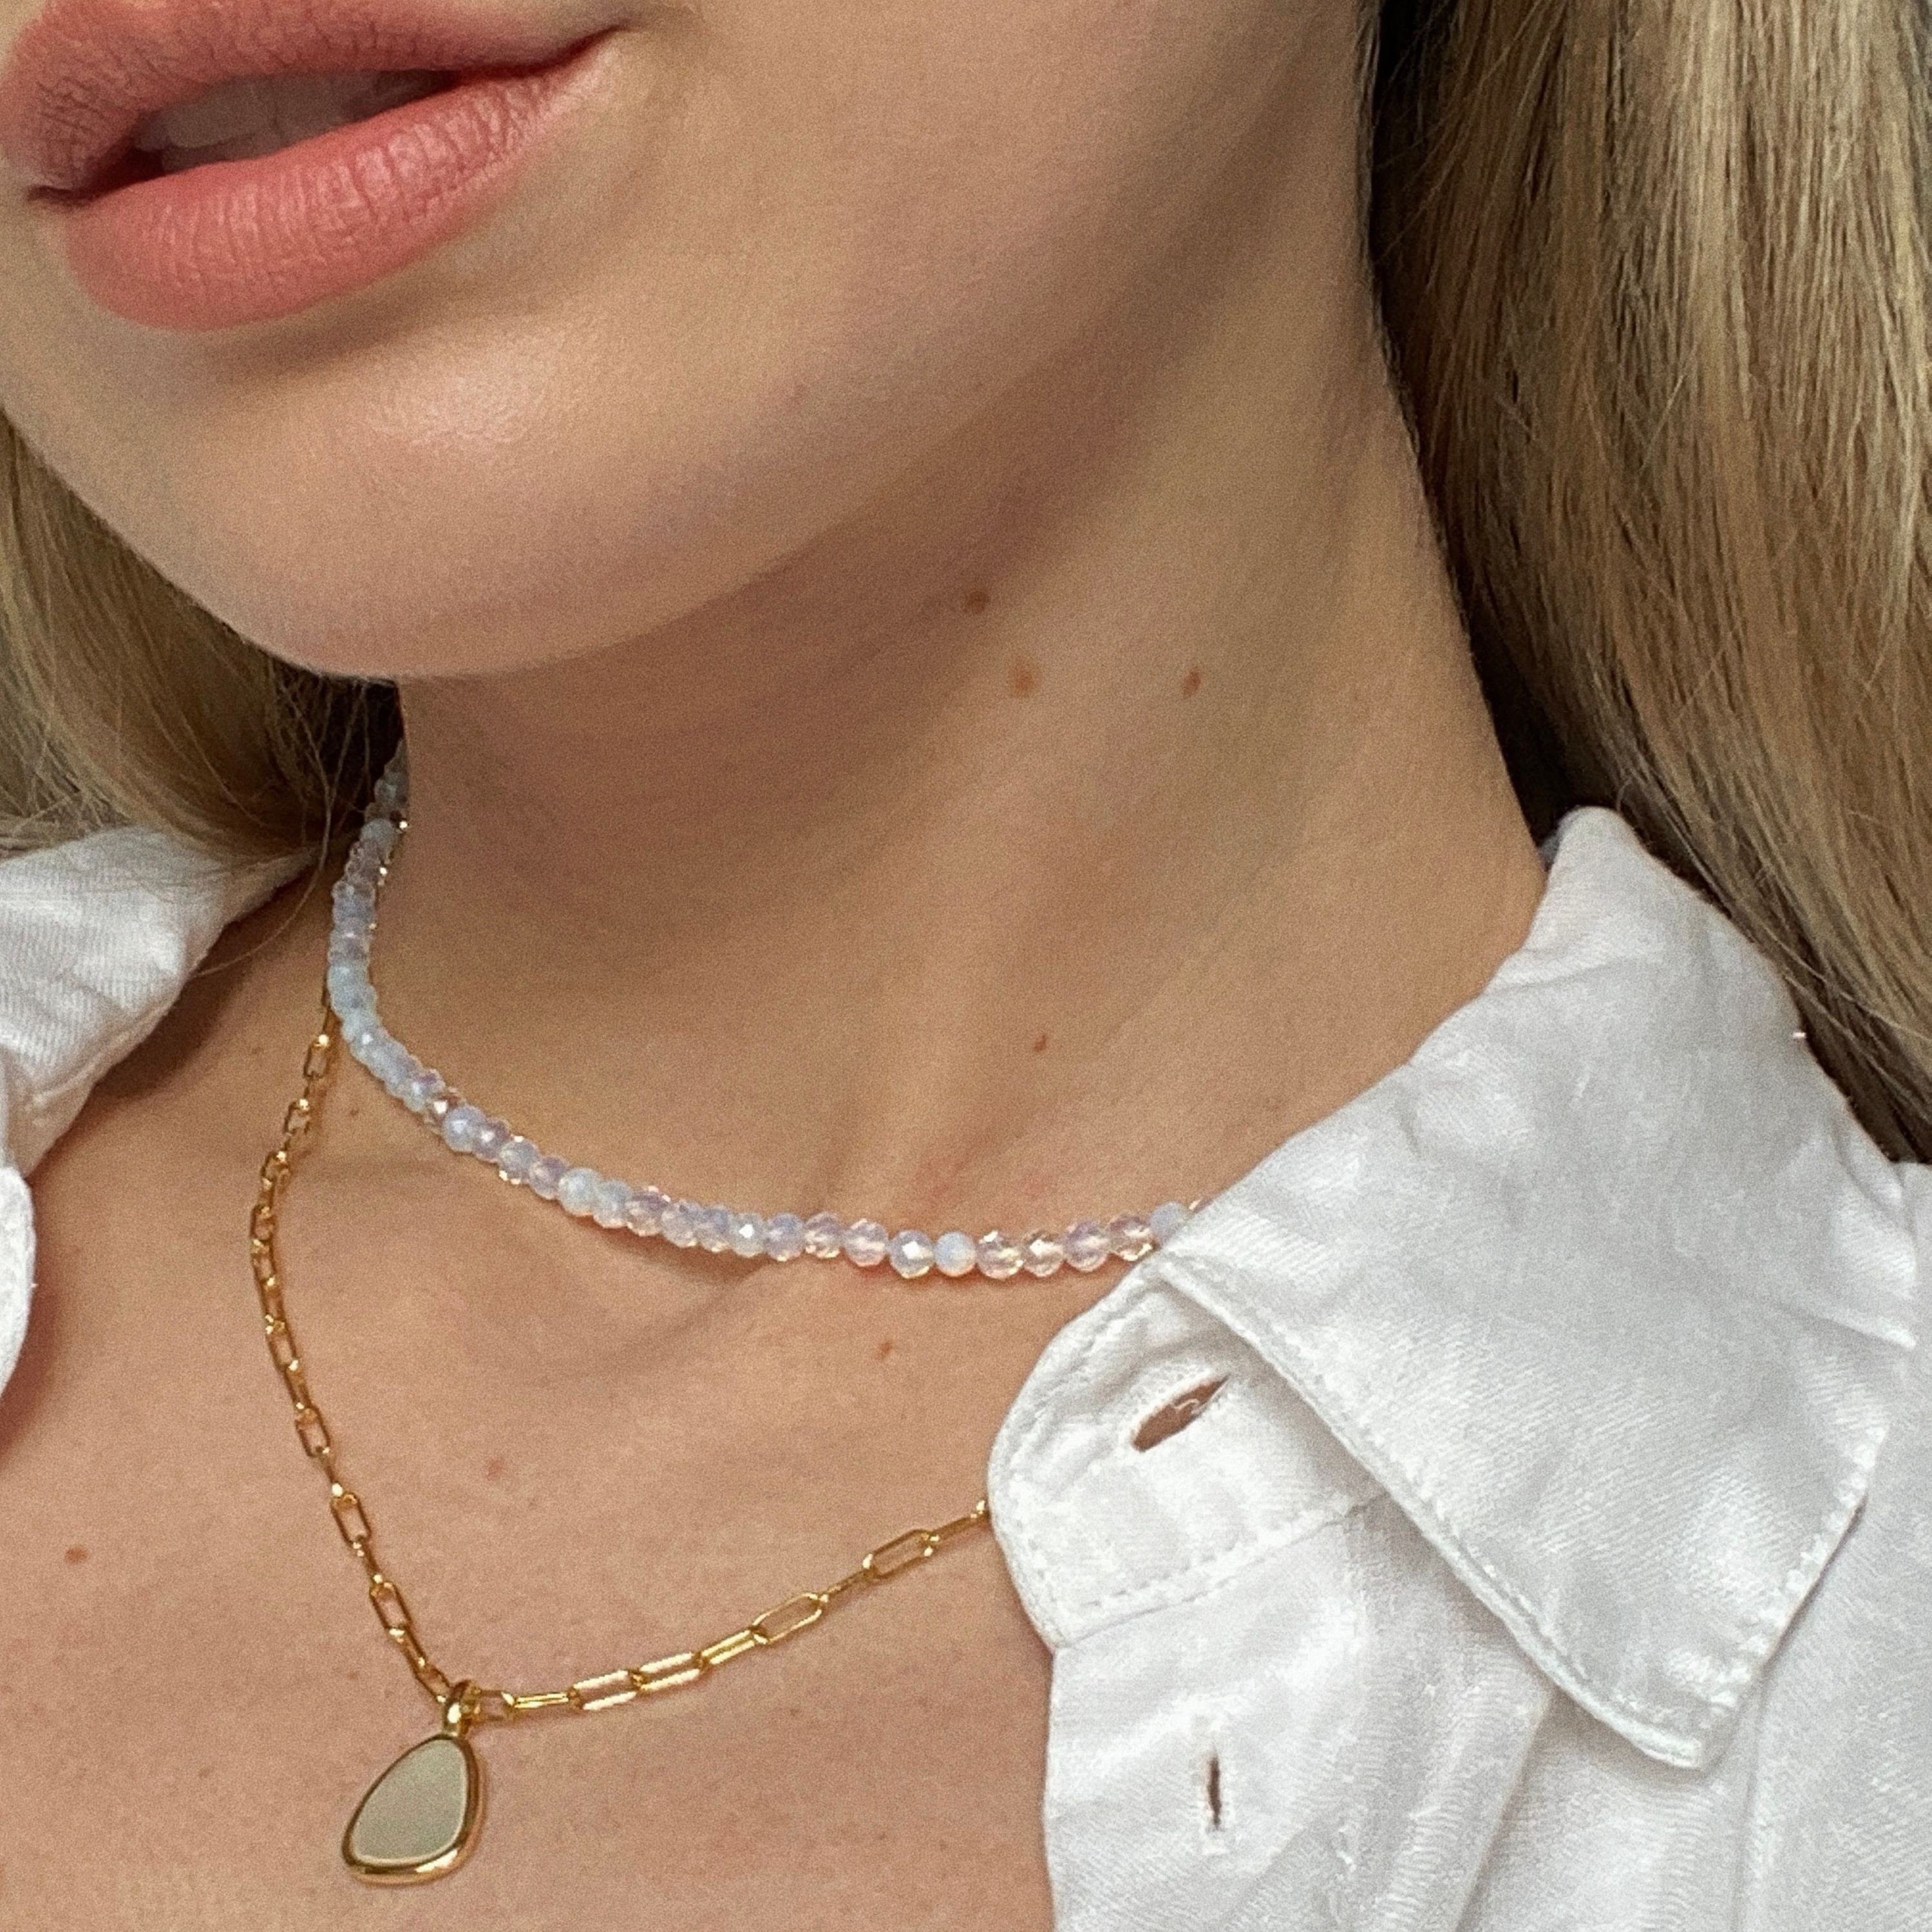 Brandlinger Perlenkette Halskette Victoria, Opalith 925 vergoldet, Silber